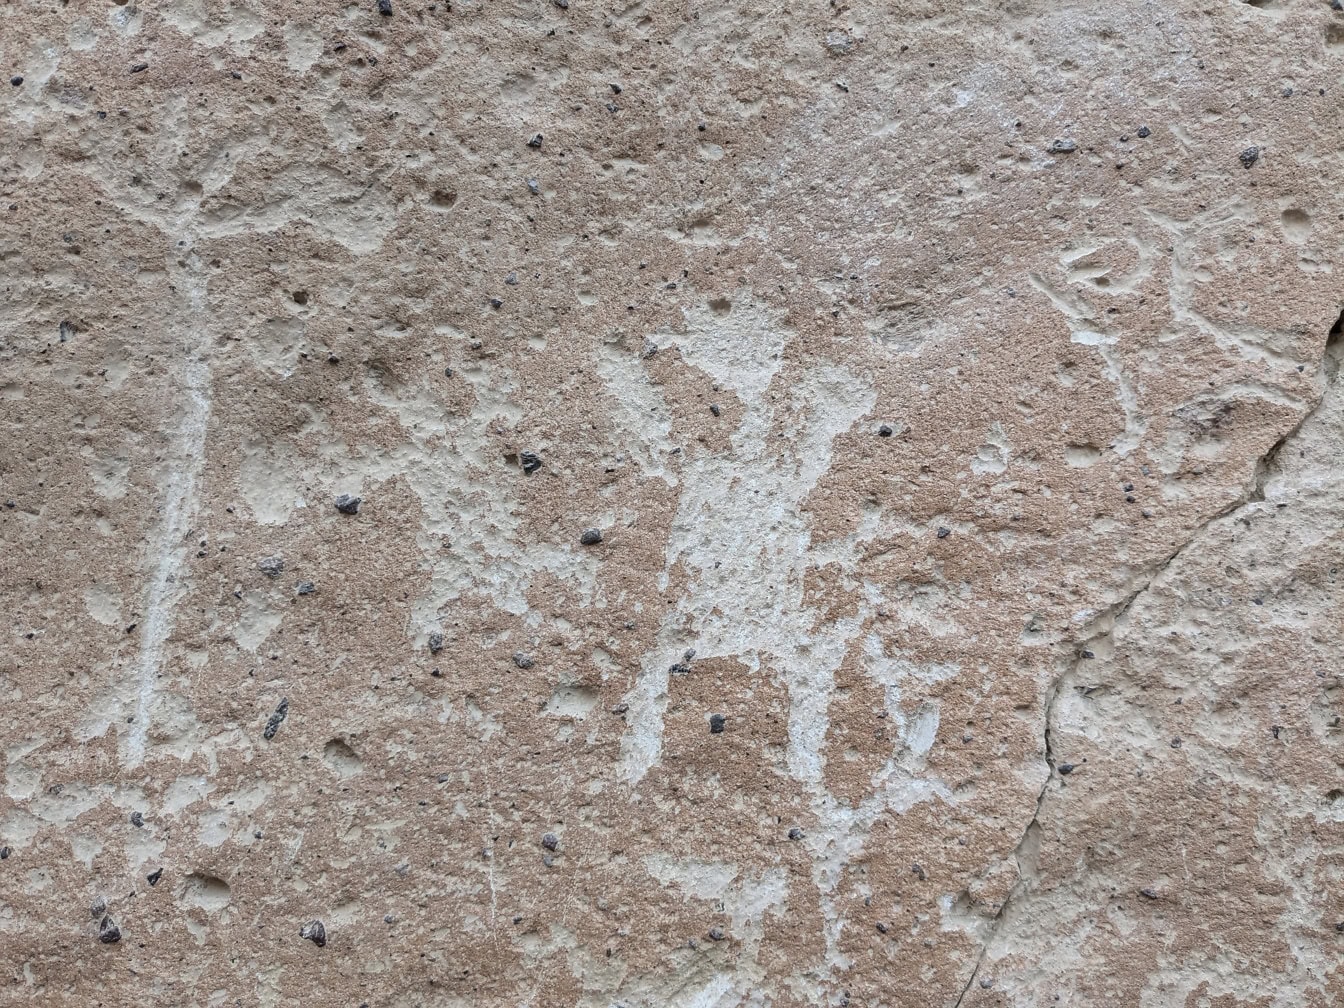 Cận cảnh một tảng đá với một bức tranh khắc đá được khắc vào đá ở Peru, một nghệ thuật thời kỳ đồ đá